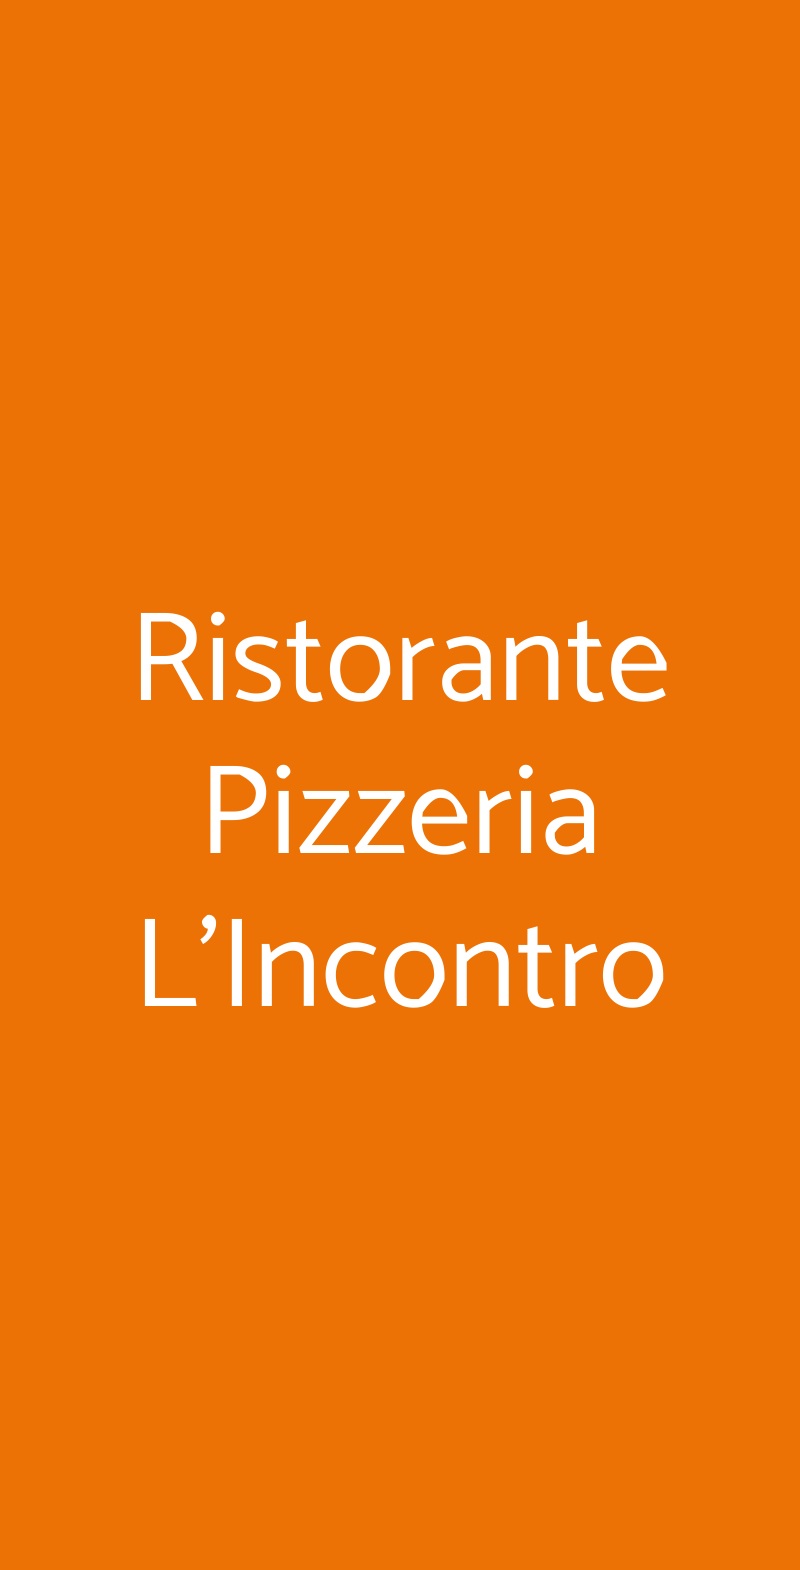 Ristorante Pizzeria L'Incontro Brescia menù 1 pagina